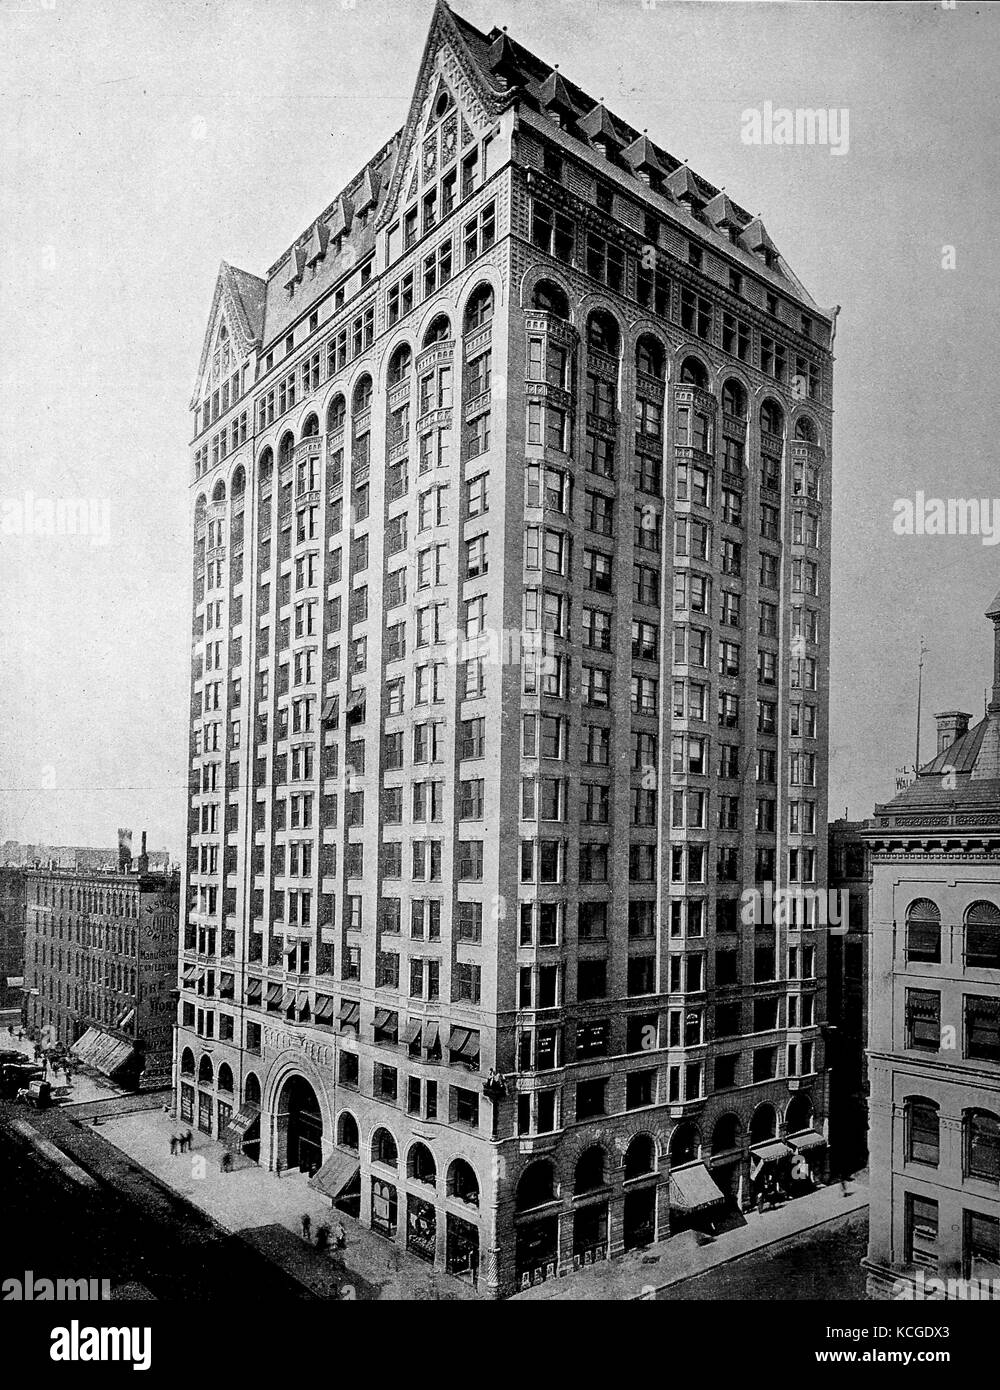 Vereinigte Staaten von Amerika, das Gebäude der Freimaurer Tempel in Chicago, Illinois, digital verbesserte Reproduktion einer historischen Foto aus dem (geschätzten) Jahr 1899 Stockfoto